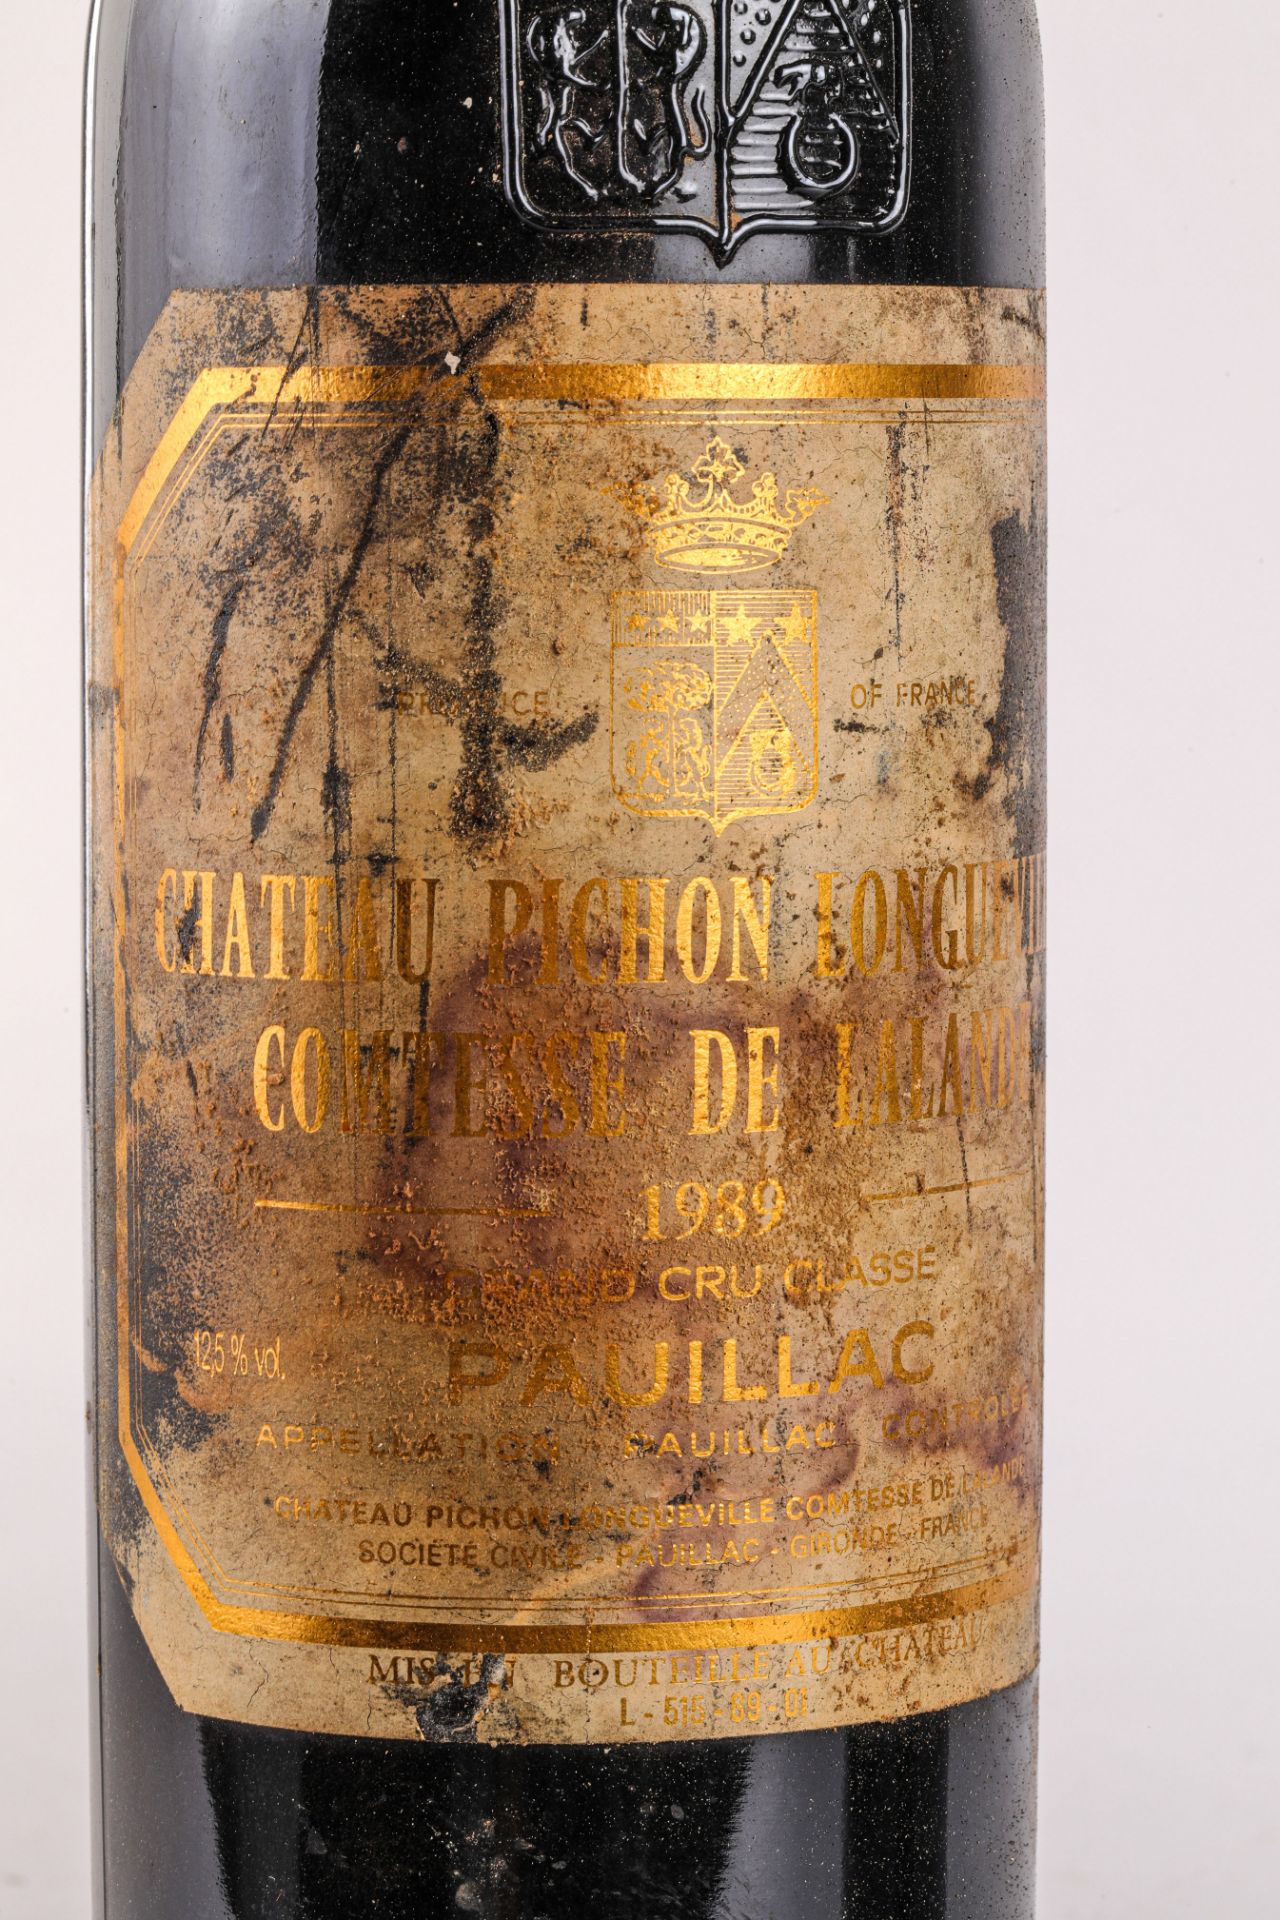 CHÂTEAU PICHON LONGUEVILLE COMTESSE DE LALANDE 2 bouteilles Grand cru classé Pauillac 1989 - Bild 2 aus 5